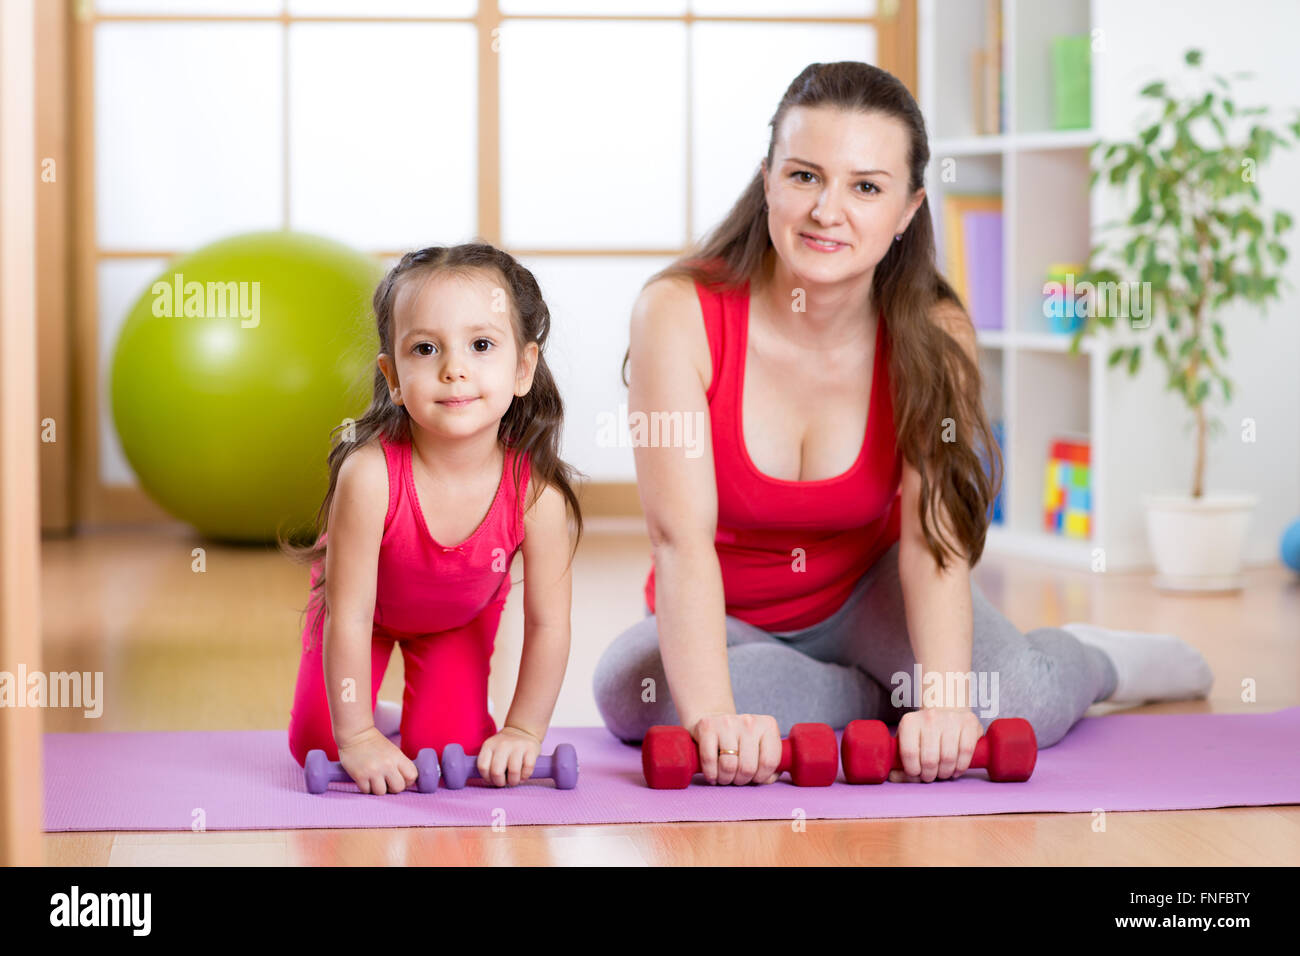 Femme avec enfant faisant de la gymnastique et des exercices de remise en forme Banque D'Images